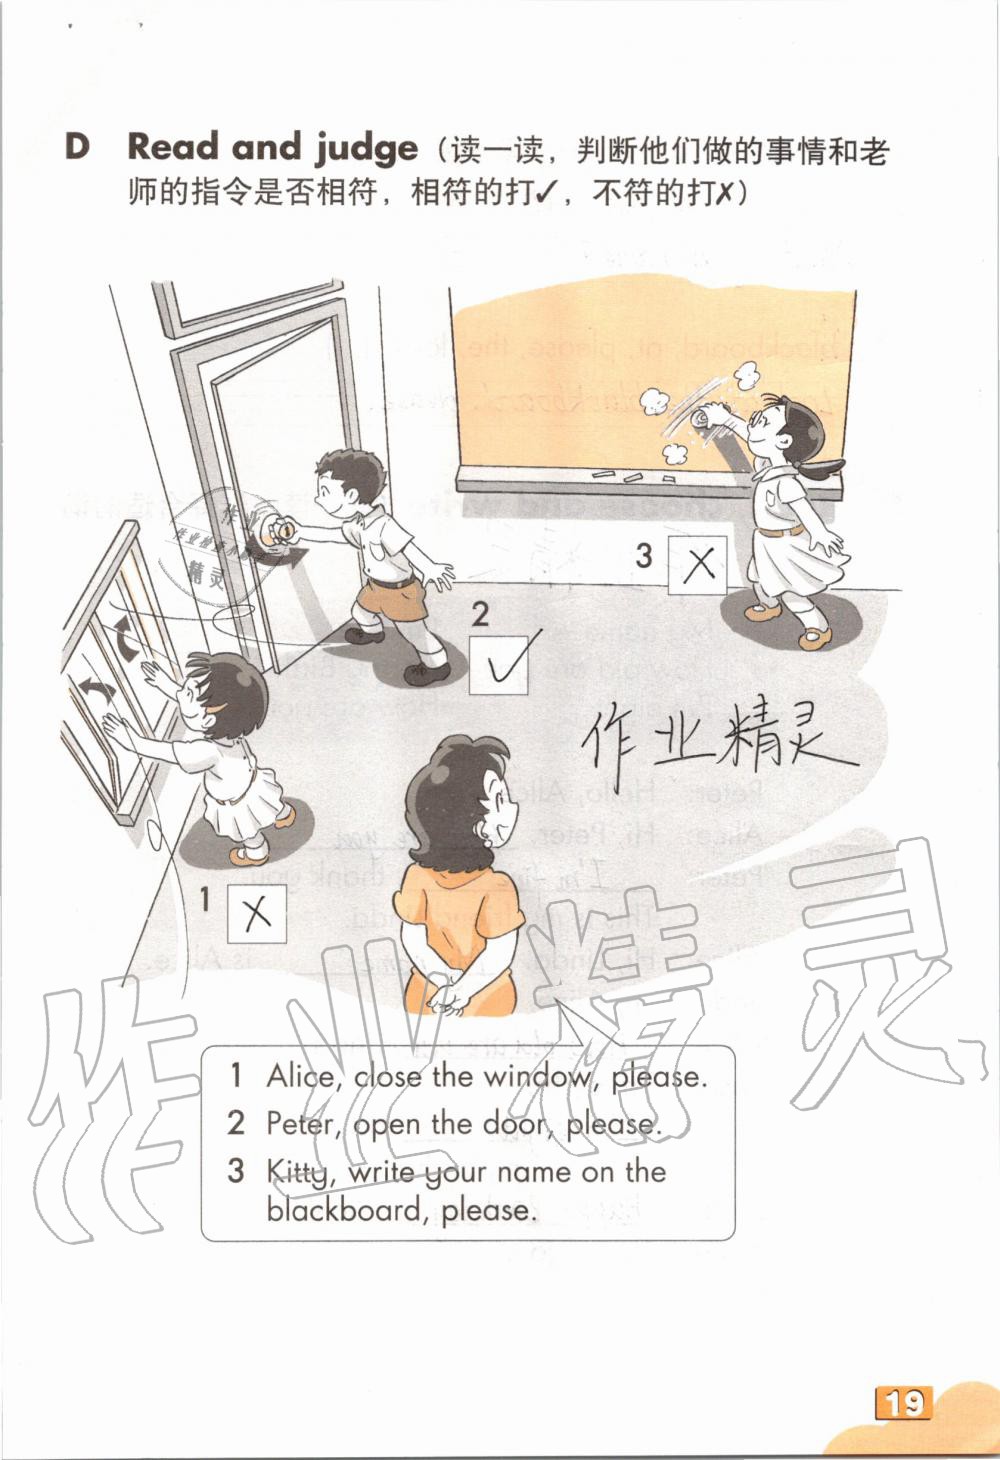 2019年英语练习部分三年级第一学期牛津上海版 第18页